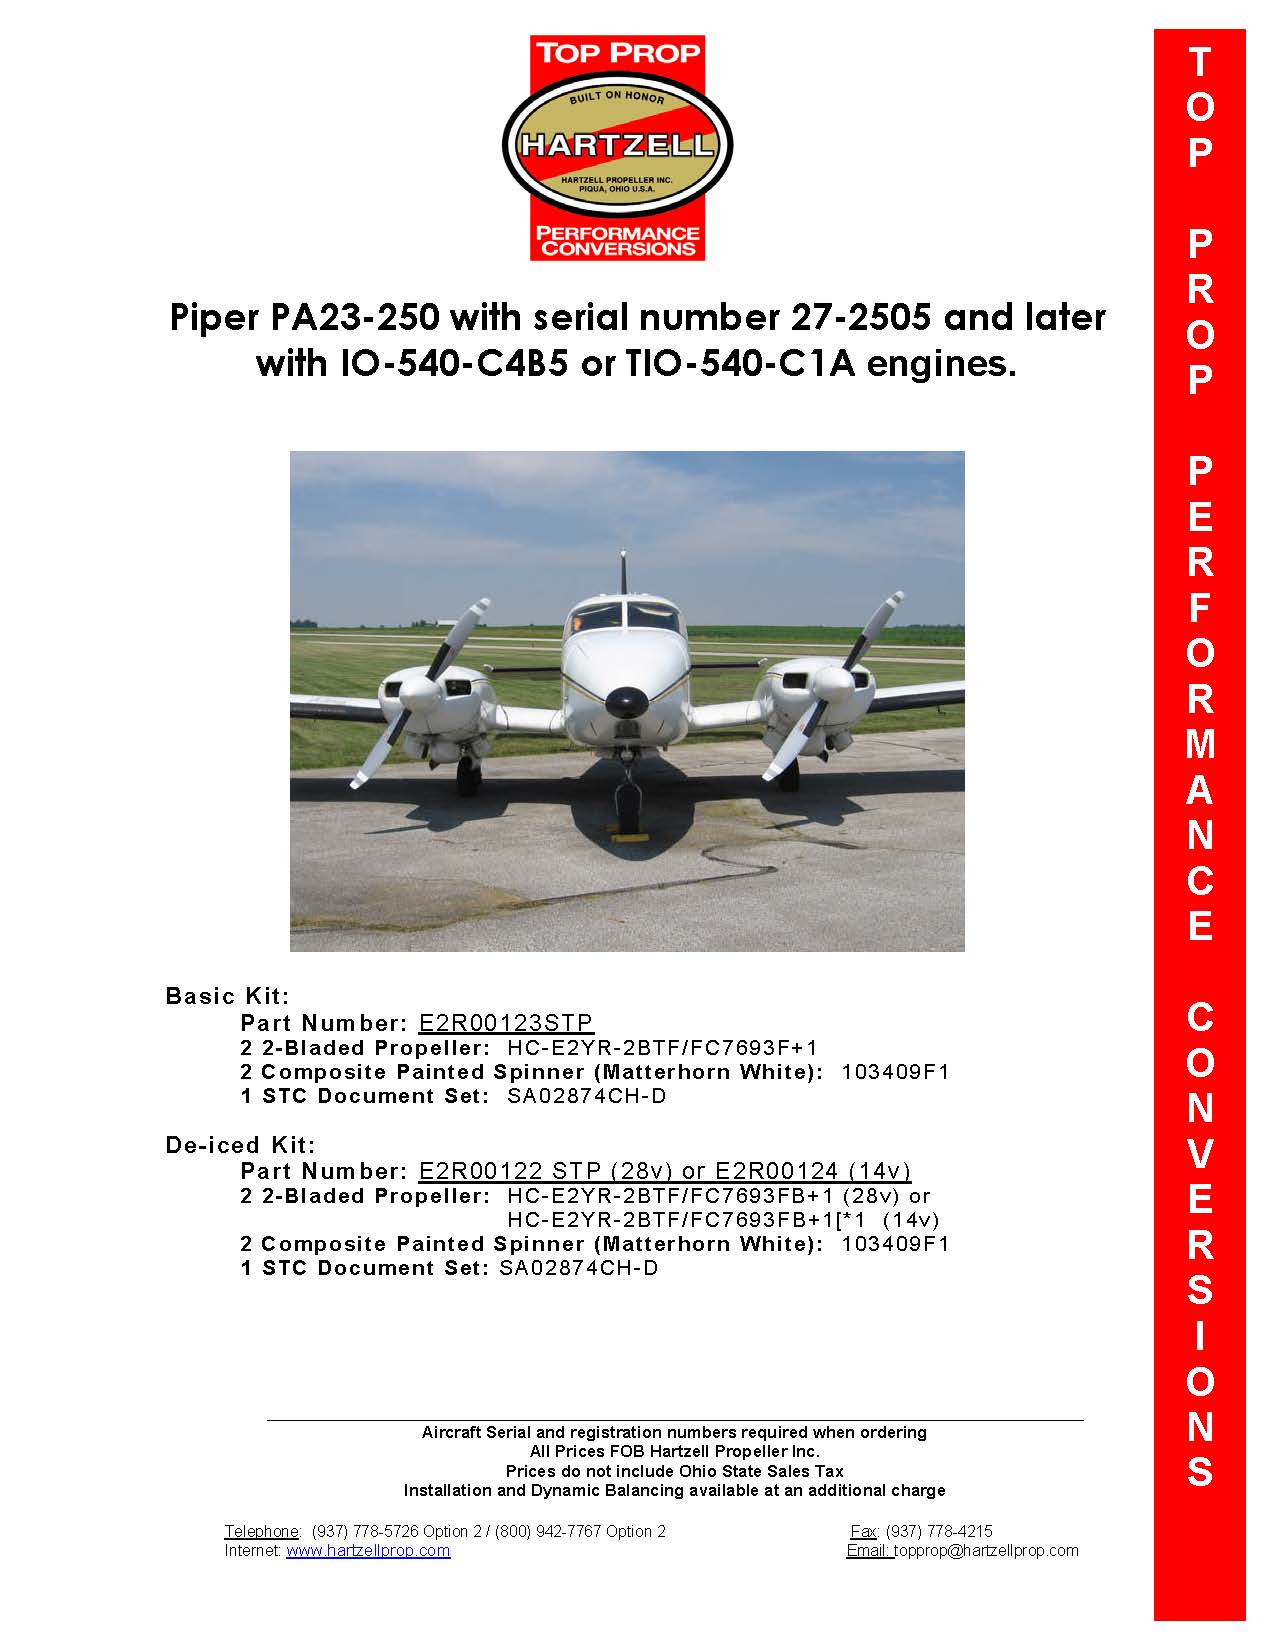 PIPER-AZTEC-PA23-250-E2R00122STP-28V-PAGE-1